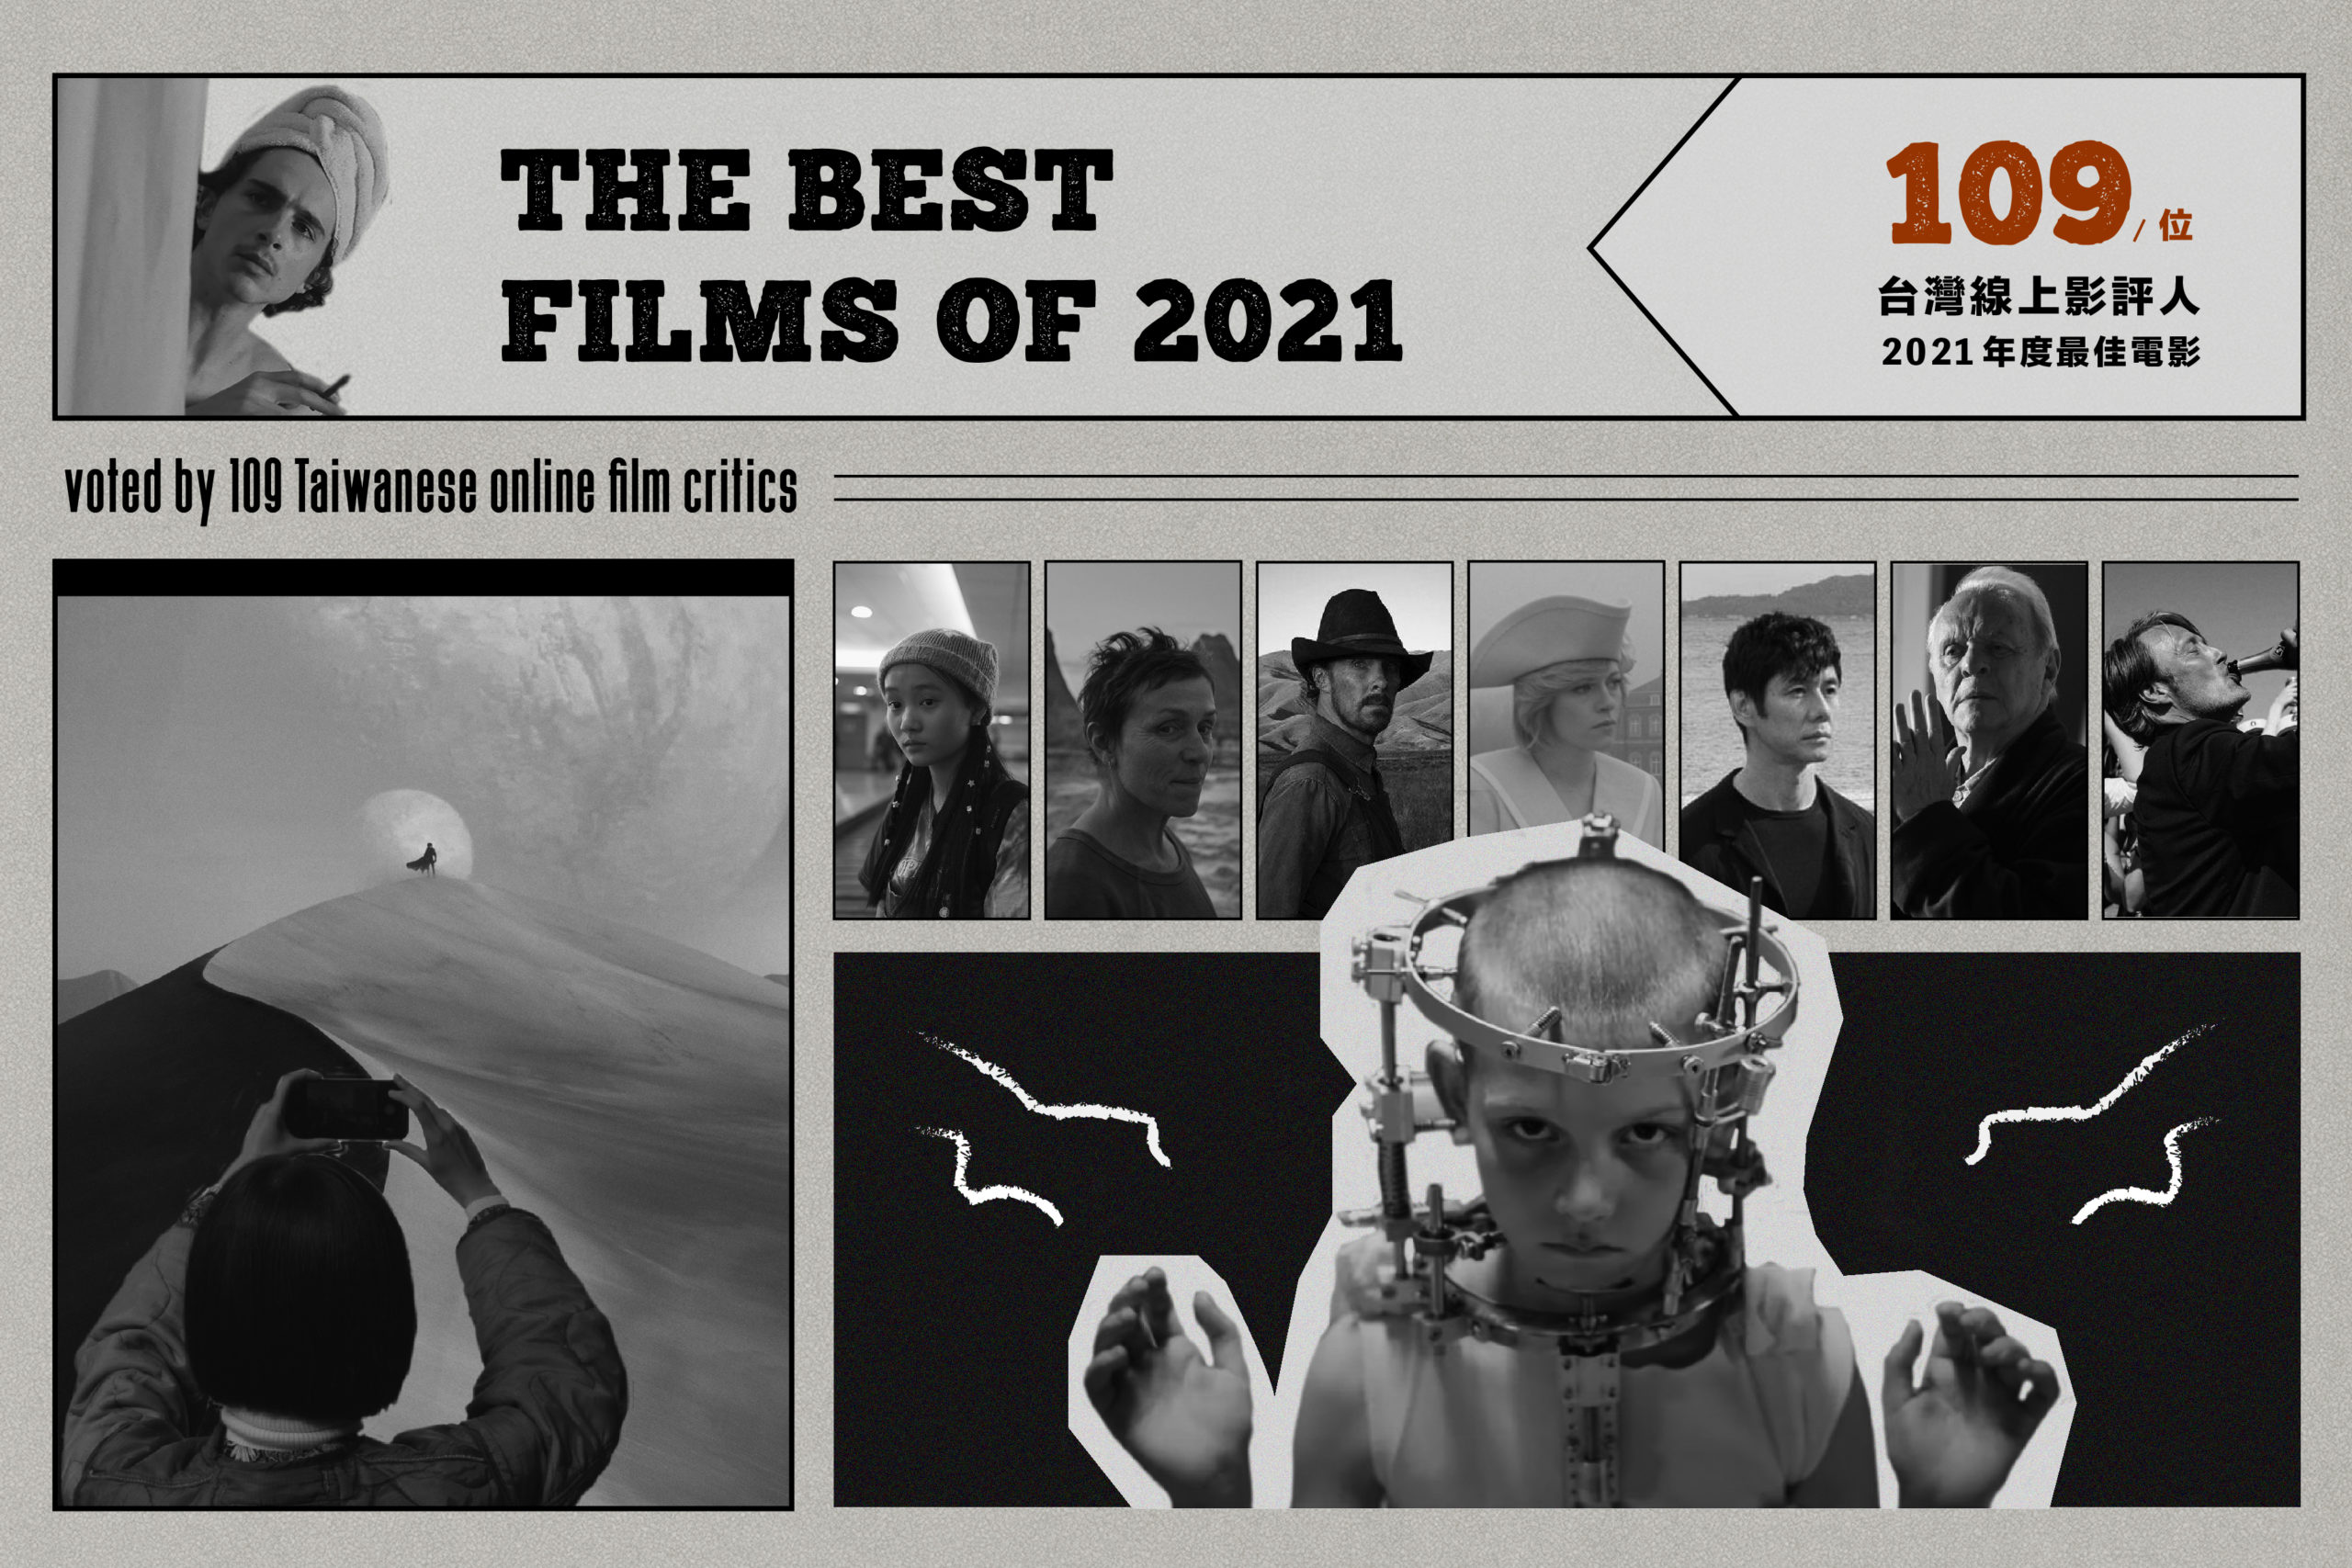 [情報] 百位台灣影評人 2021年度最佳電影排行榜